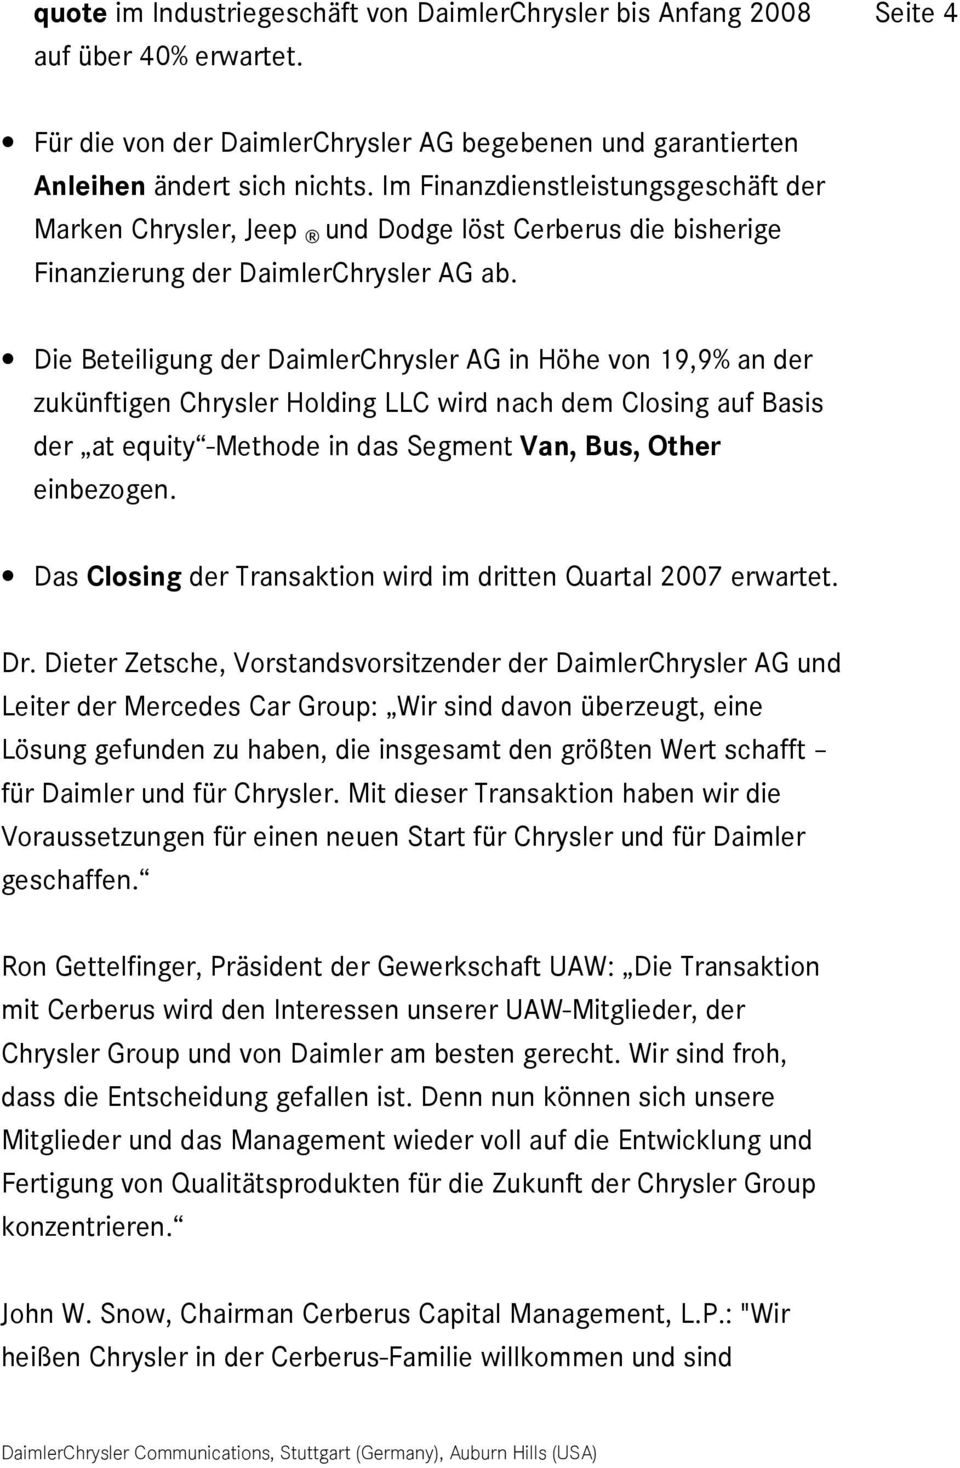 Die Beteiligung der DaimlerChrysler AG in Höhe von 19,9% an der zukünftigen Chrysler Holding LLC wird nach dem Closing auf Basis der at equity -Methode in das Segment Van, Bus, Other einbezogen.